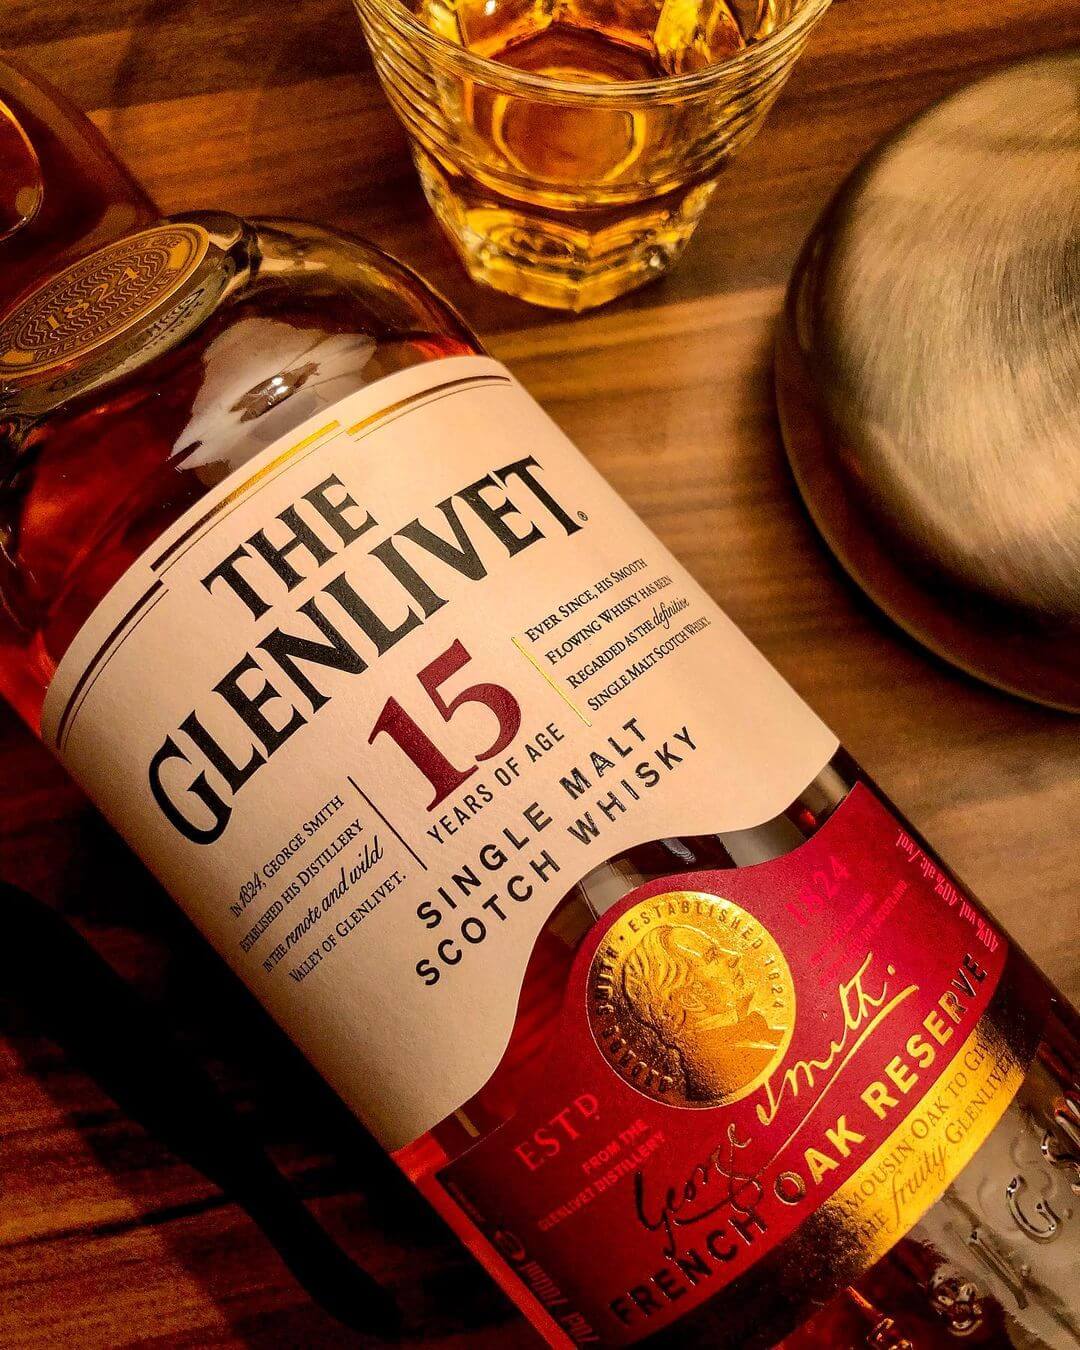 Glenlivet 15 Single Malt Scotch Whisky